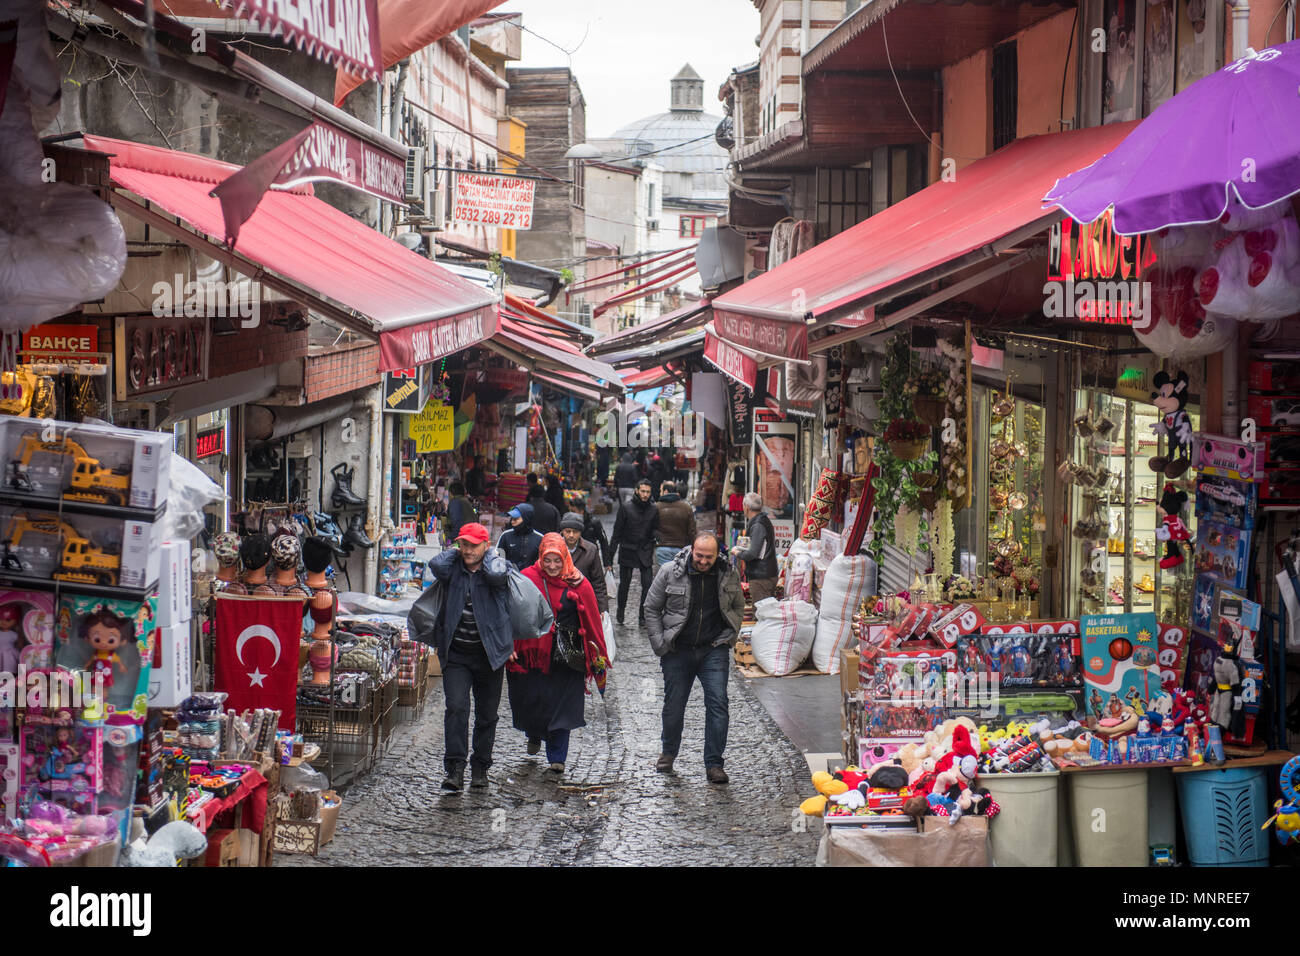 Menschen gehen, auf einem Hügel auf einer schmalen Straße, wo Geschäfte und Stände im Freien Markt Linie auf beiden Seiten des engen Raum, Istanbul, Türkei Stockfoto